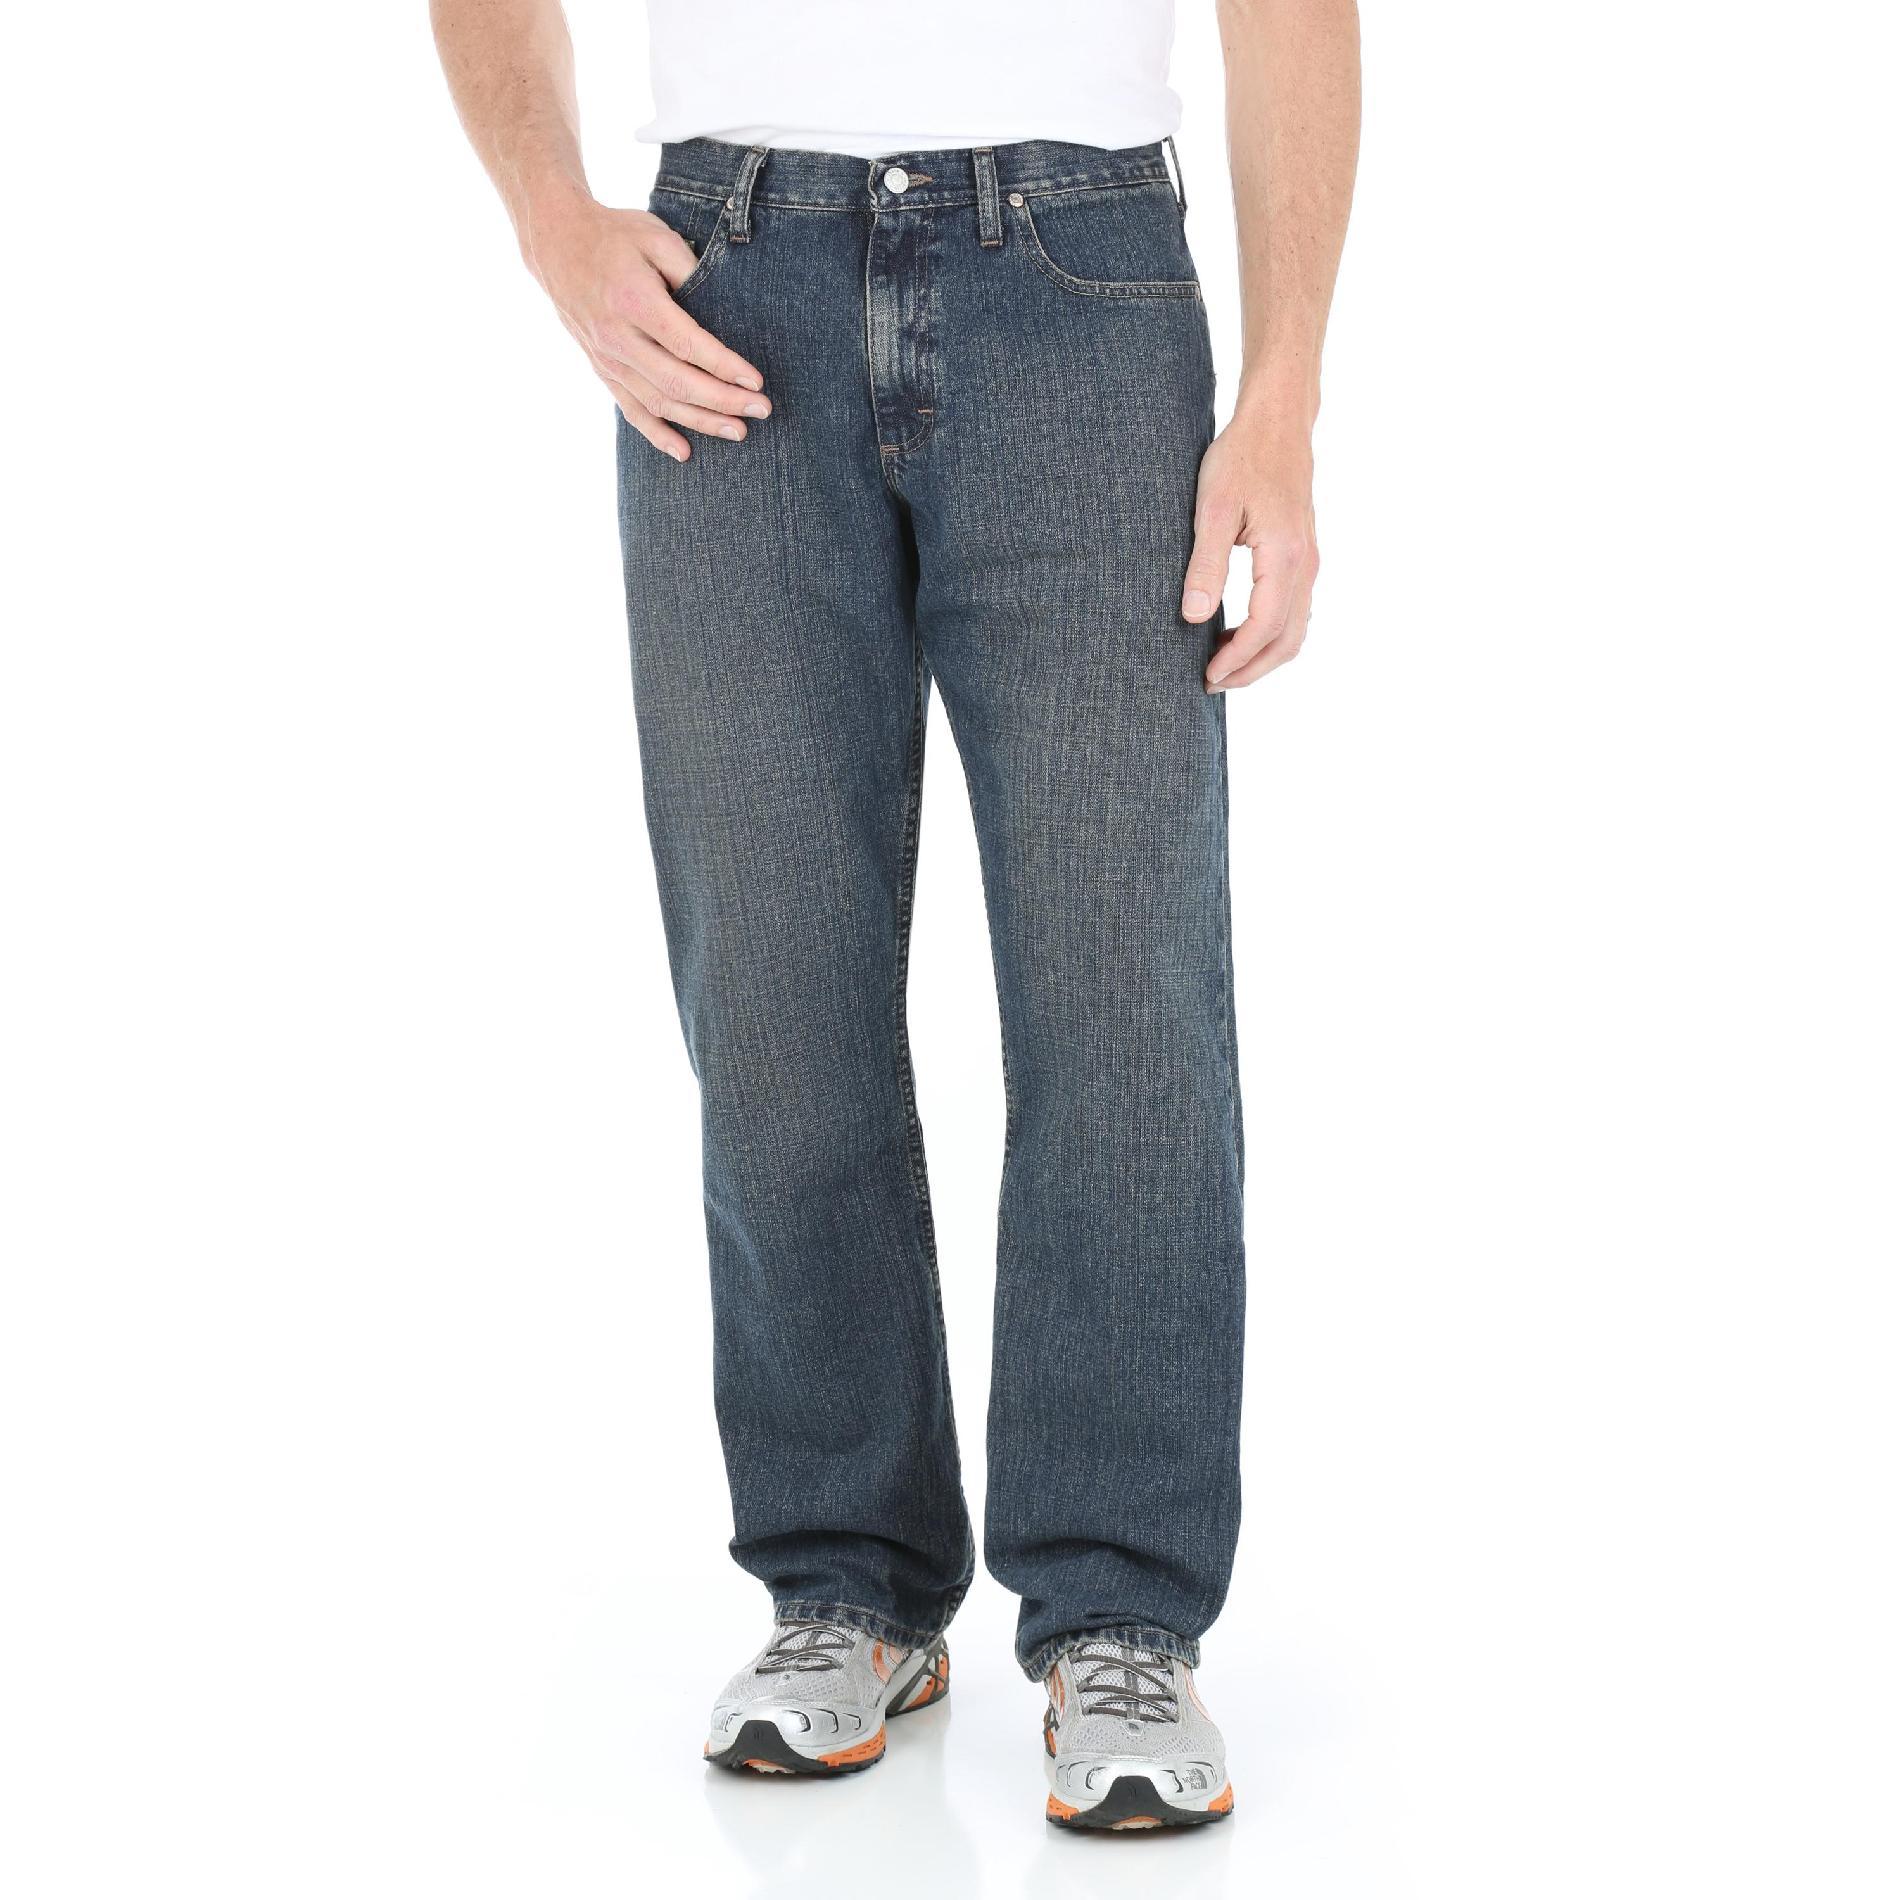 Wrangler Men's Five Star Premium Denim Jeans - Relaxed Fit